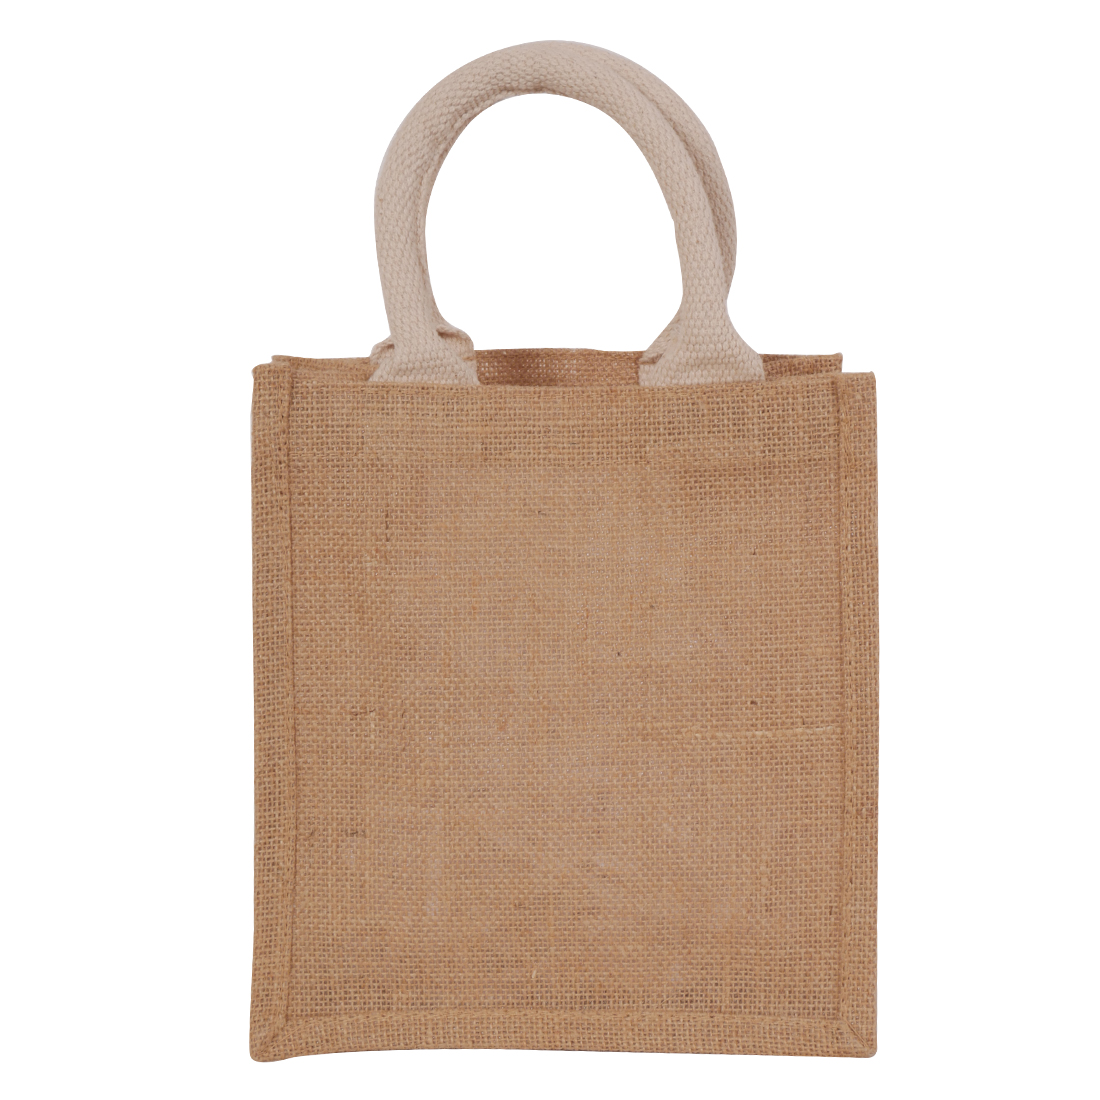 Tiffin bag - Sangeetha Bags